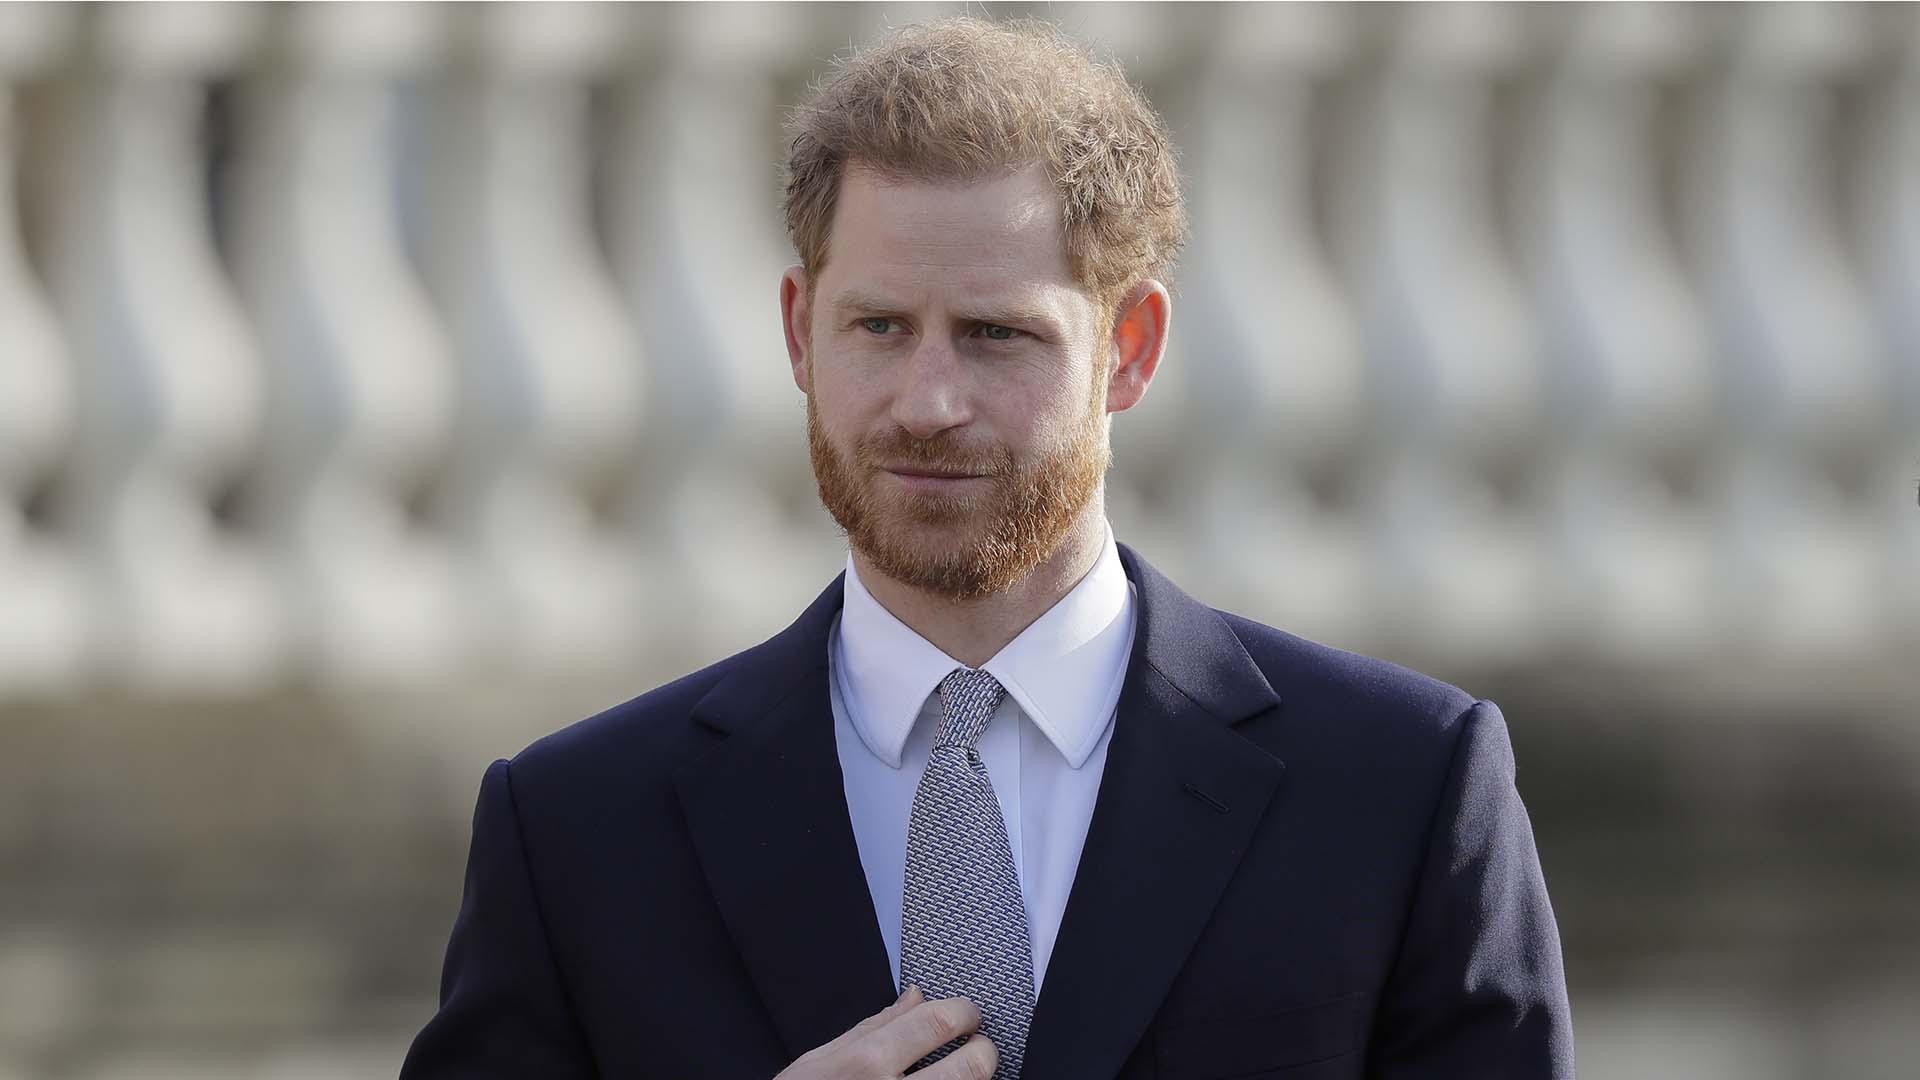 El príncipe Harry llega a Canadá para iniciar su nueva vida junto a Meghan Markle y su hijo